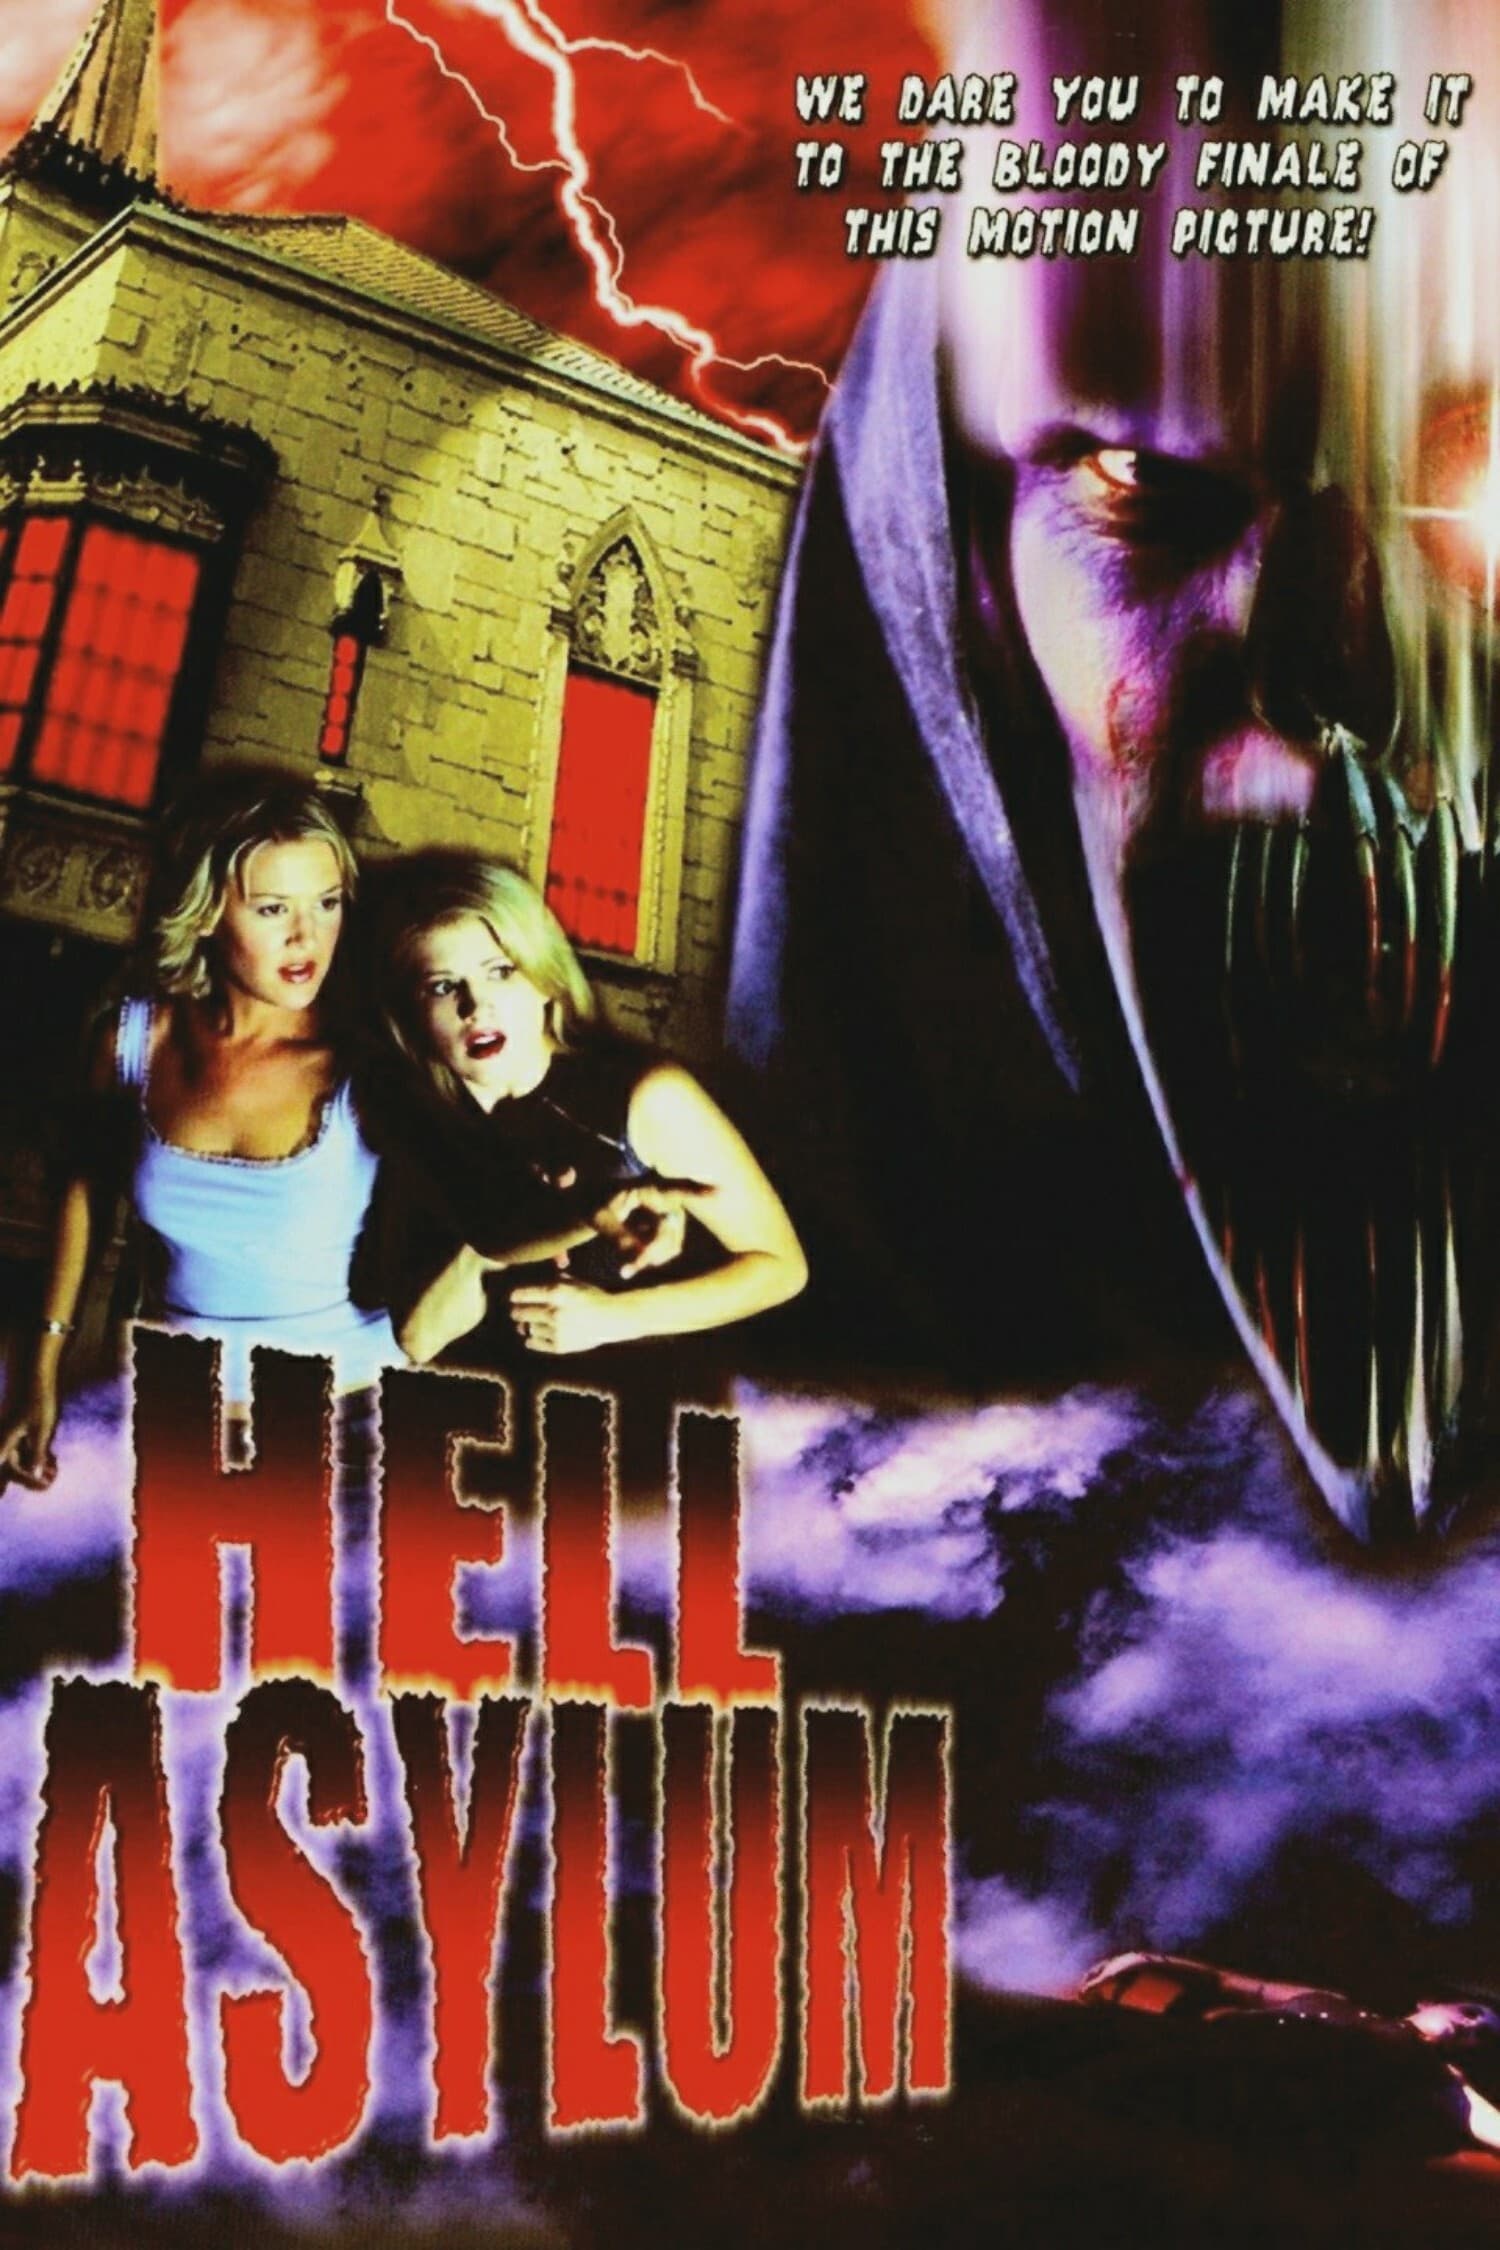 Hell Asylum (2002)